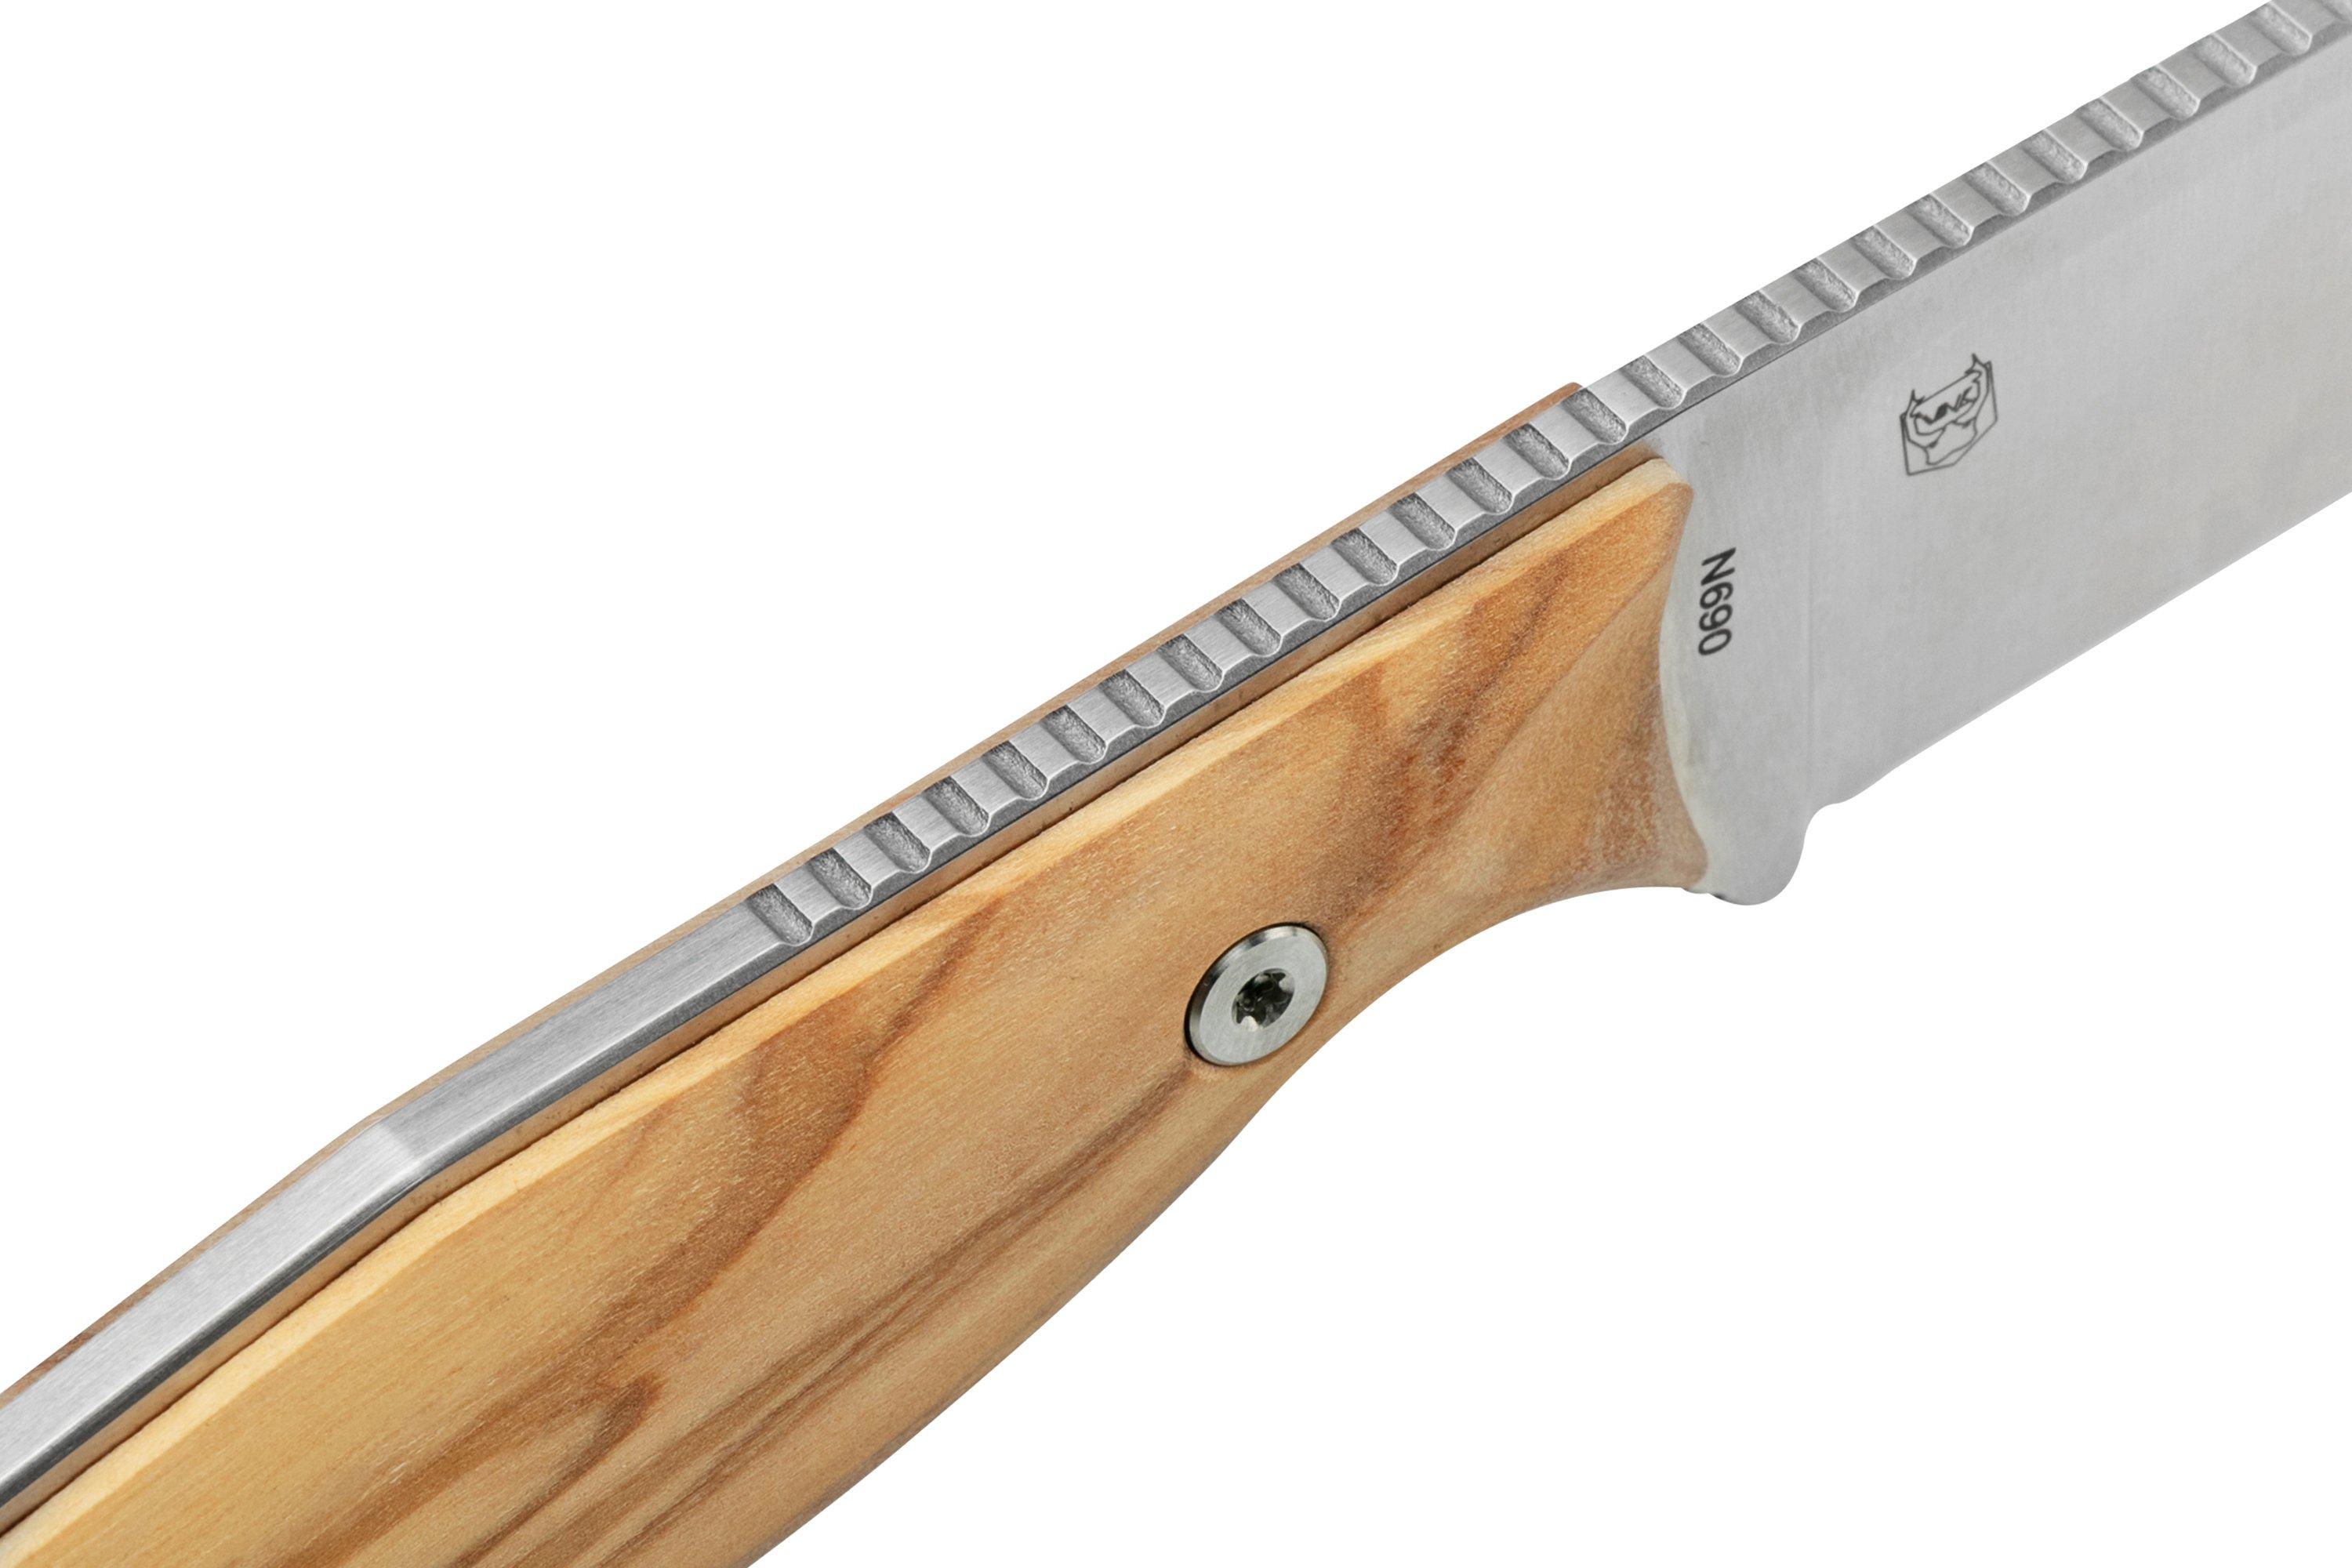 Steel feststehendes Braginets Real Design bei Wood Olive Günstiger | Furrier shoppen Harpoon Messer, 3612W Ivan